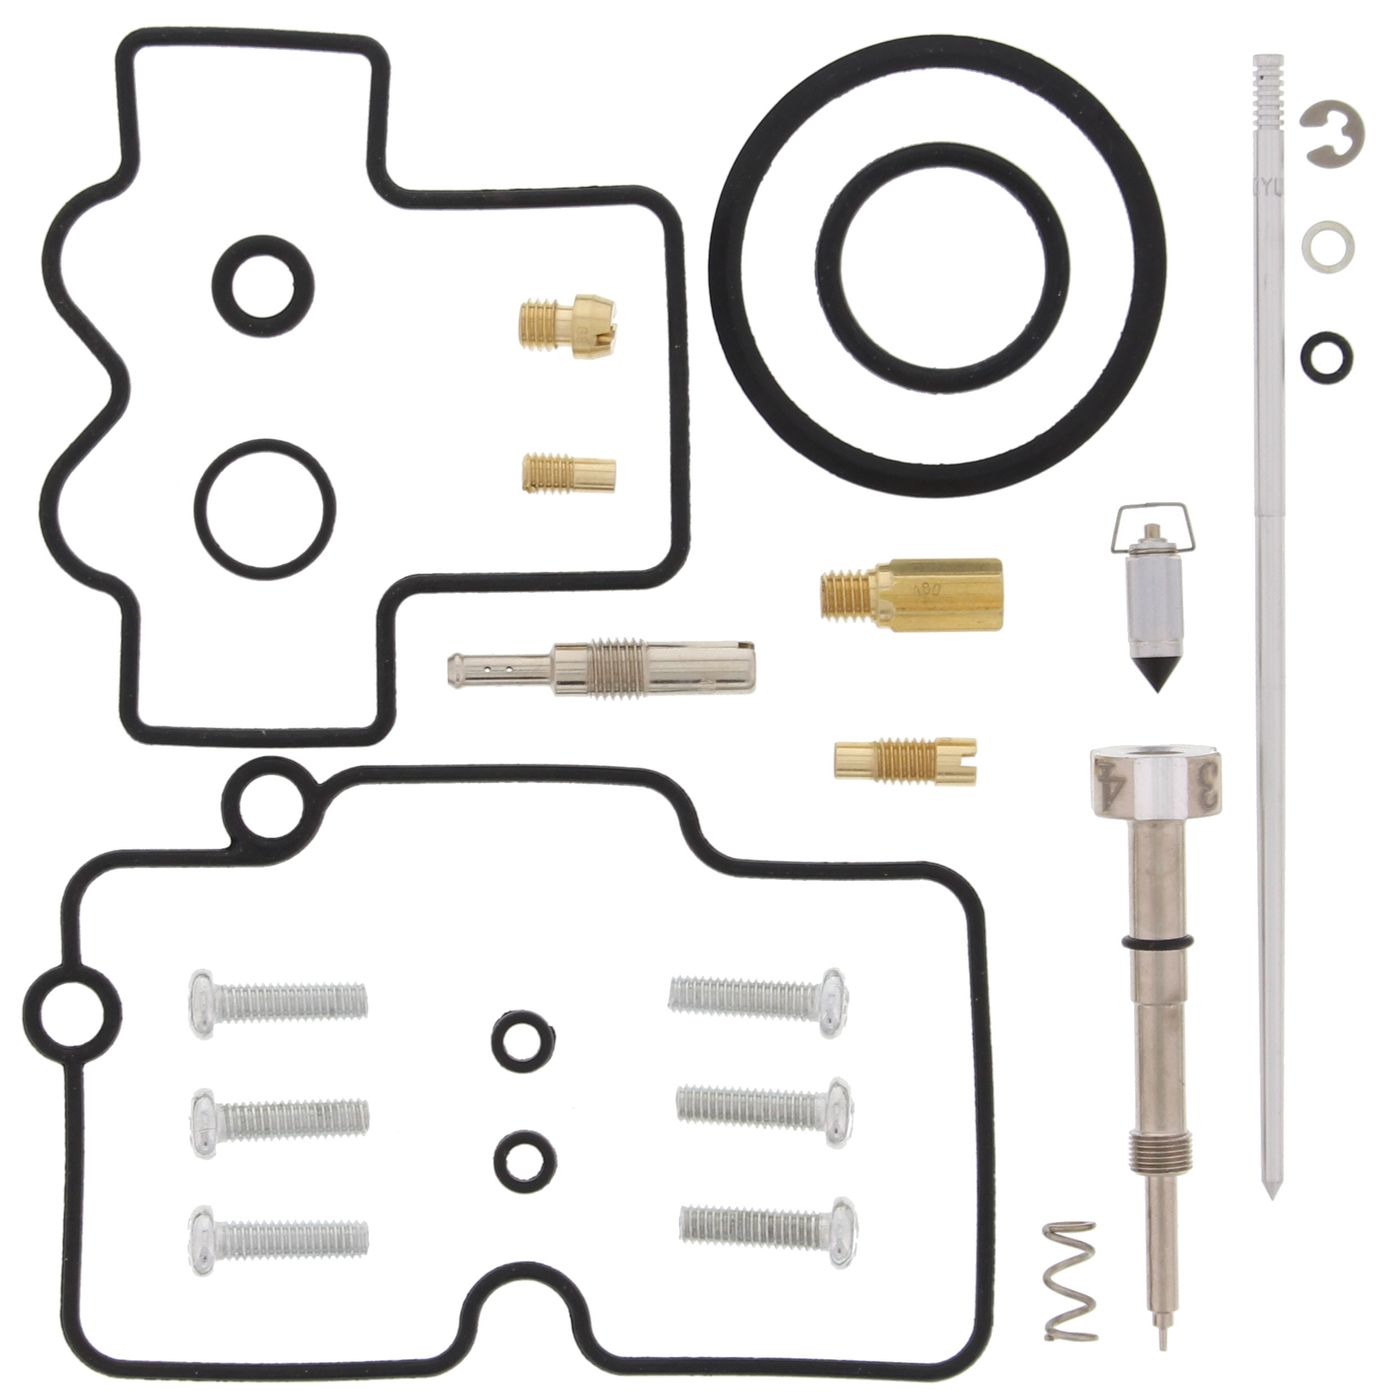 Wrp Carb Repair Kits - WRP261456 image